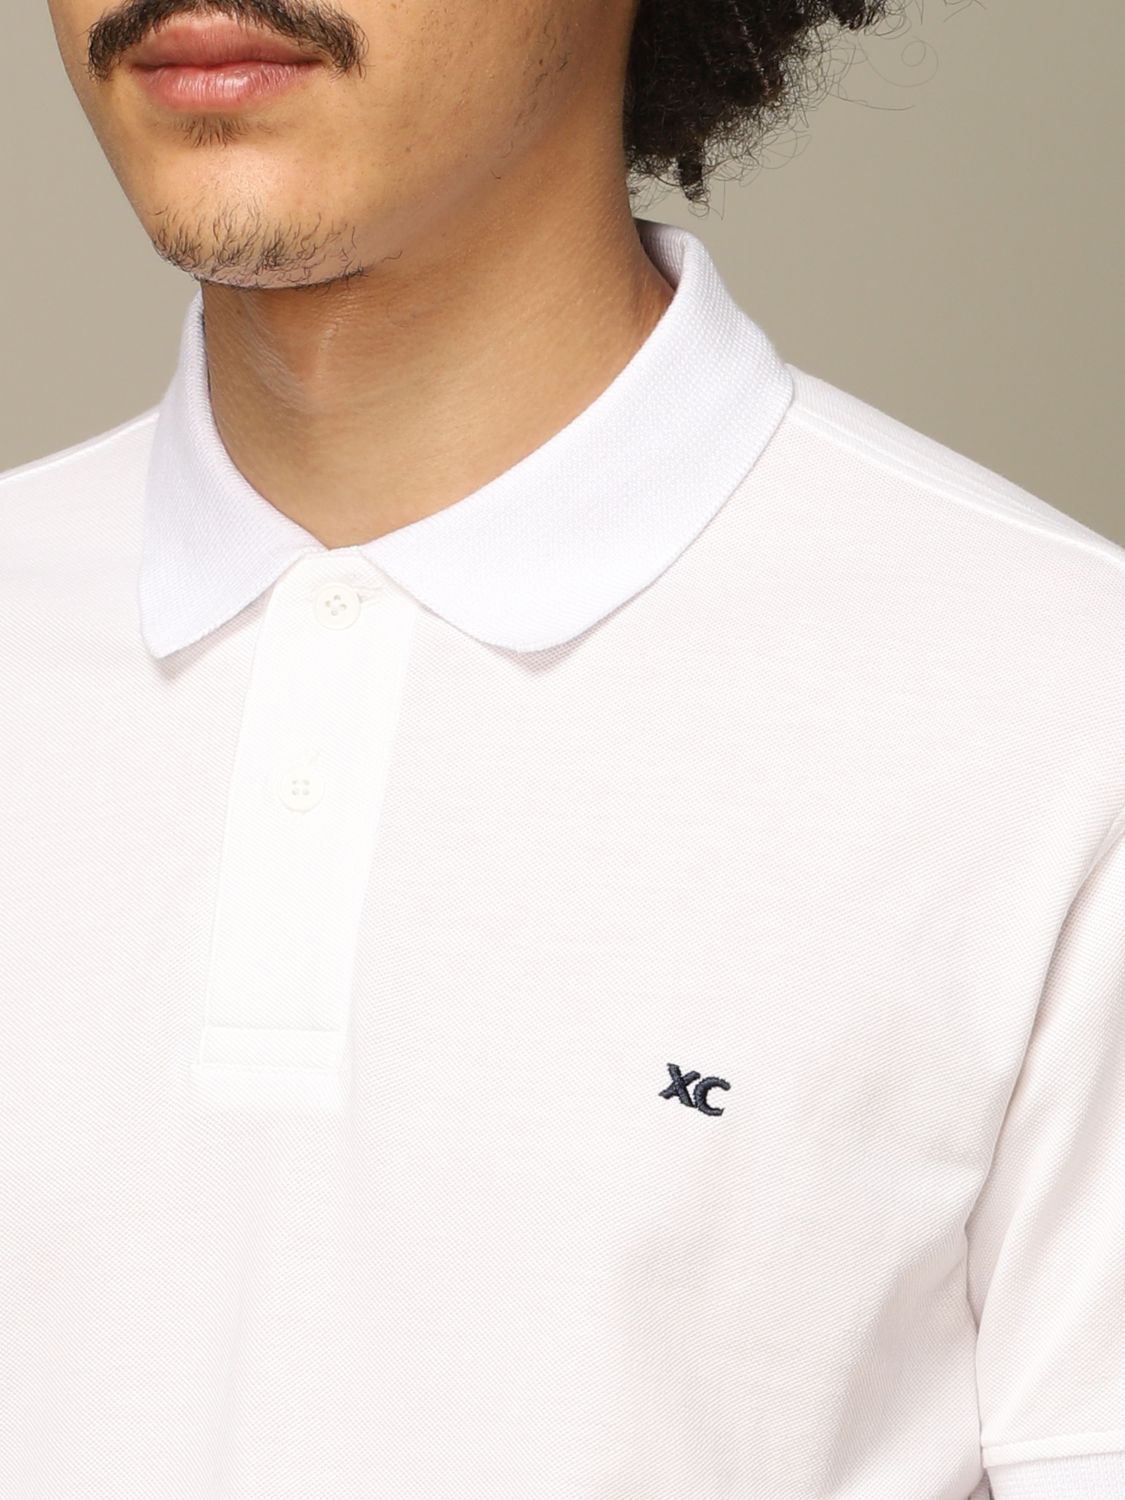 Xc Outlet: Polo shirt men | Polo Shirt Xc Men White | Polo Shirt Xc